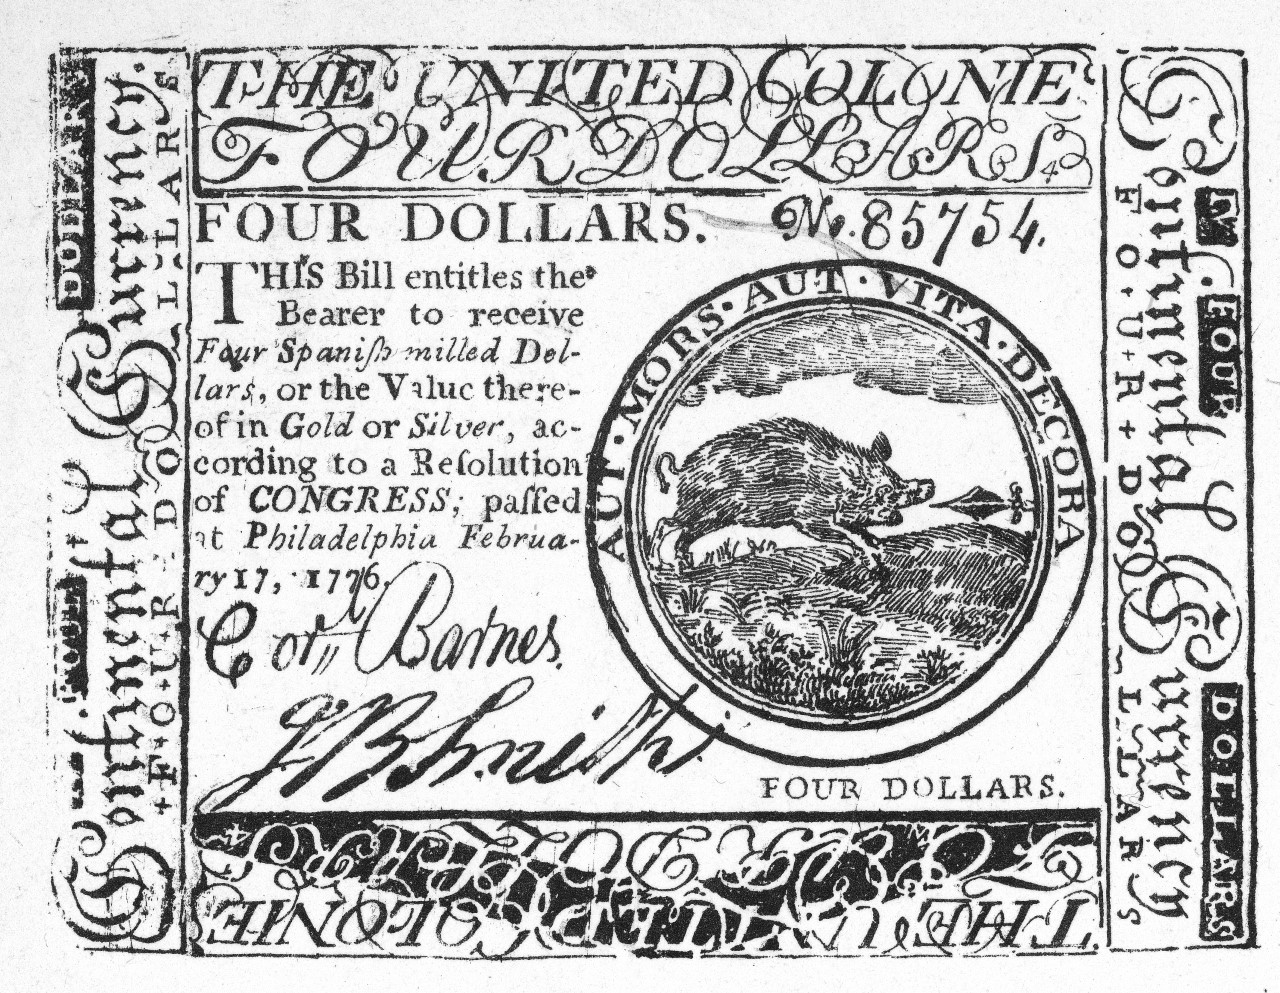 La imagen muestra un billete de 4 dólares emitido por independentistas estadounidenses en 1776 para financiar su revolución contra Reino Unido. En el papel se lee: "Este billete da derecho a su portador a recibir cuatro dólares españoles acuñados, o su valor en oro o plata..."